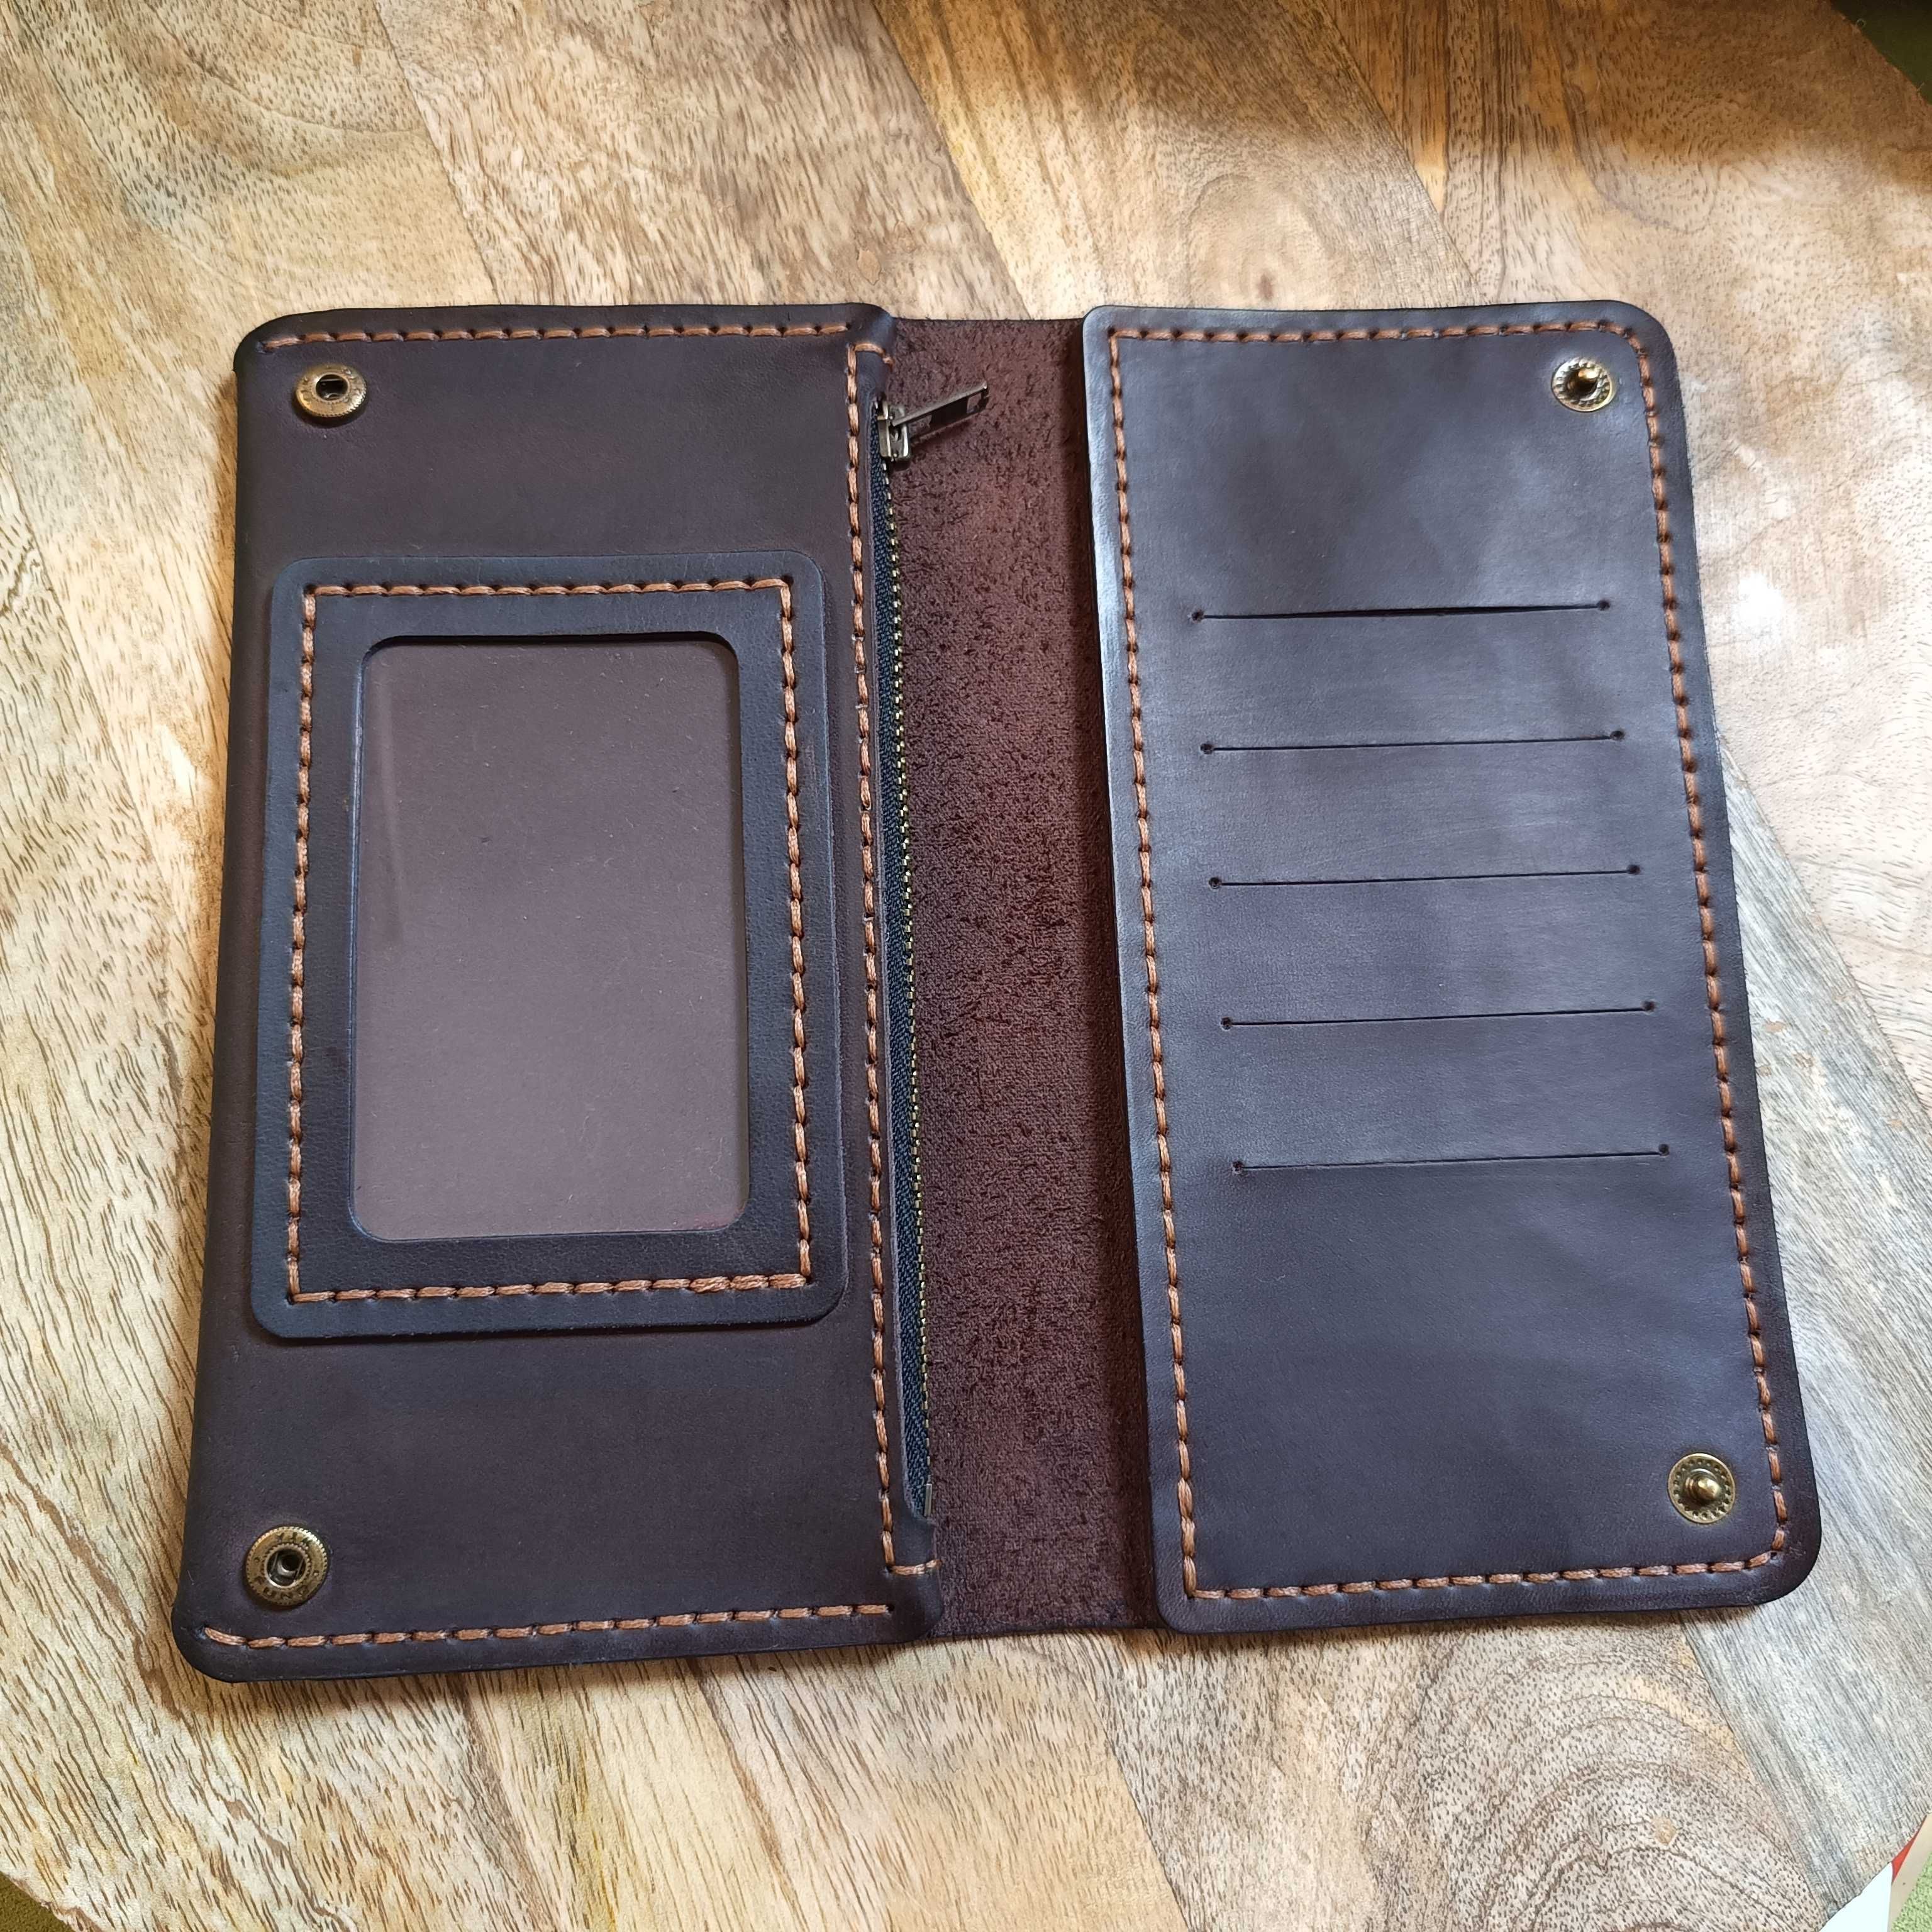 Portmonetka portfel duży skórzany ręcznie robiony